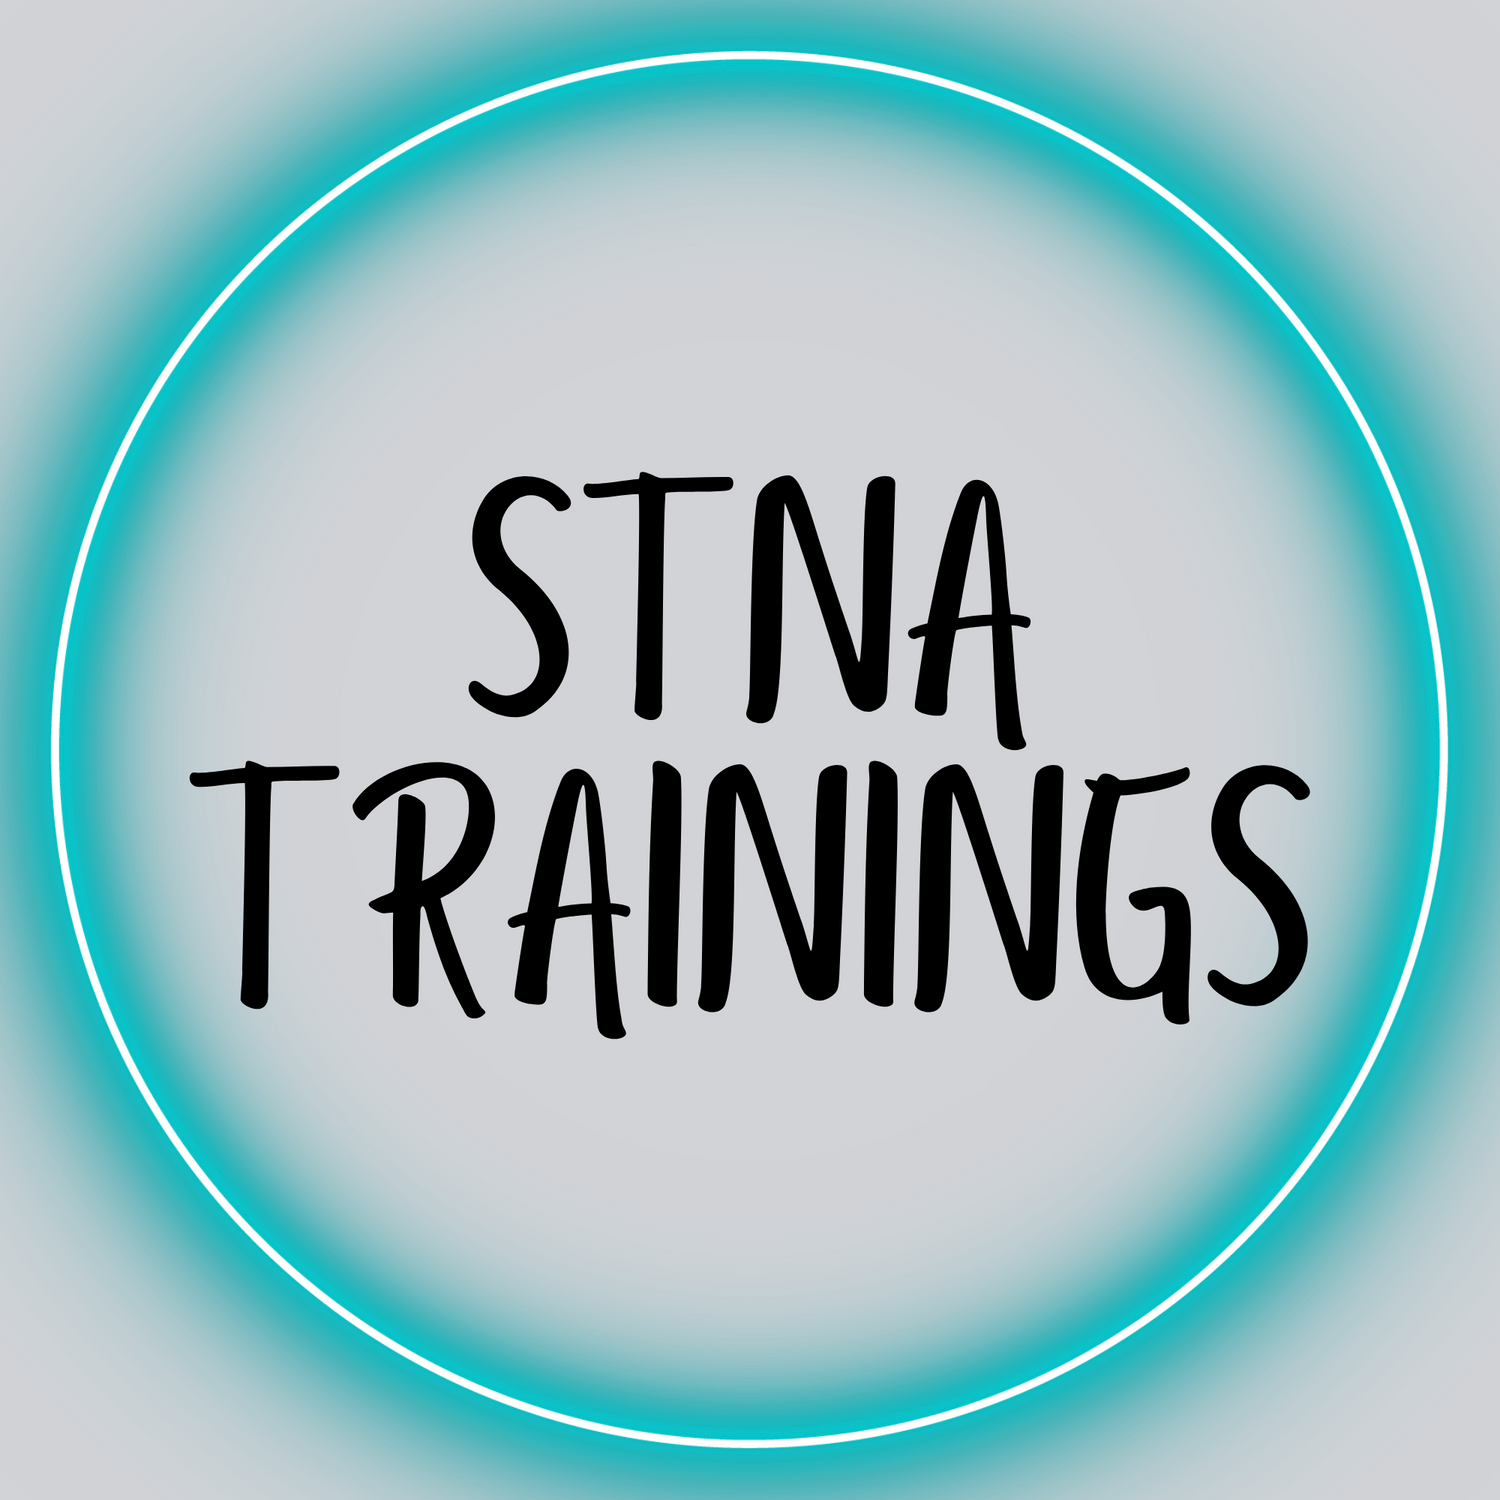 STNA Trainings